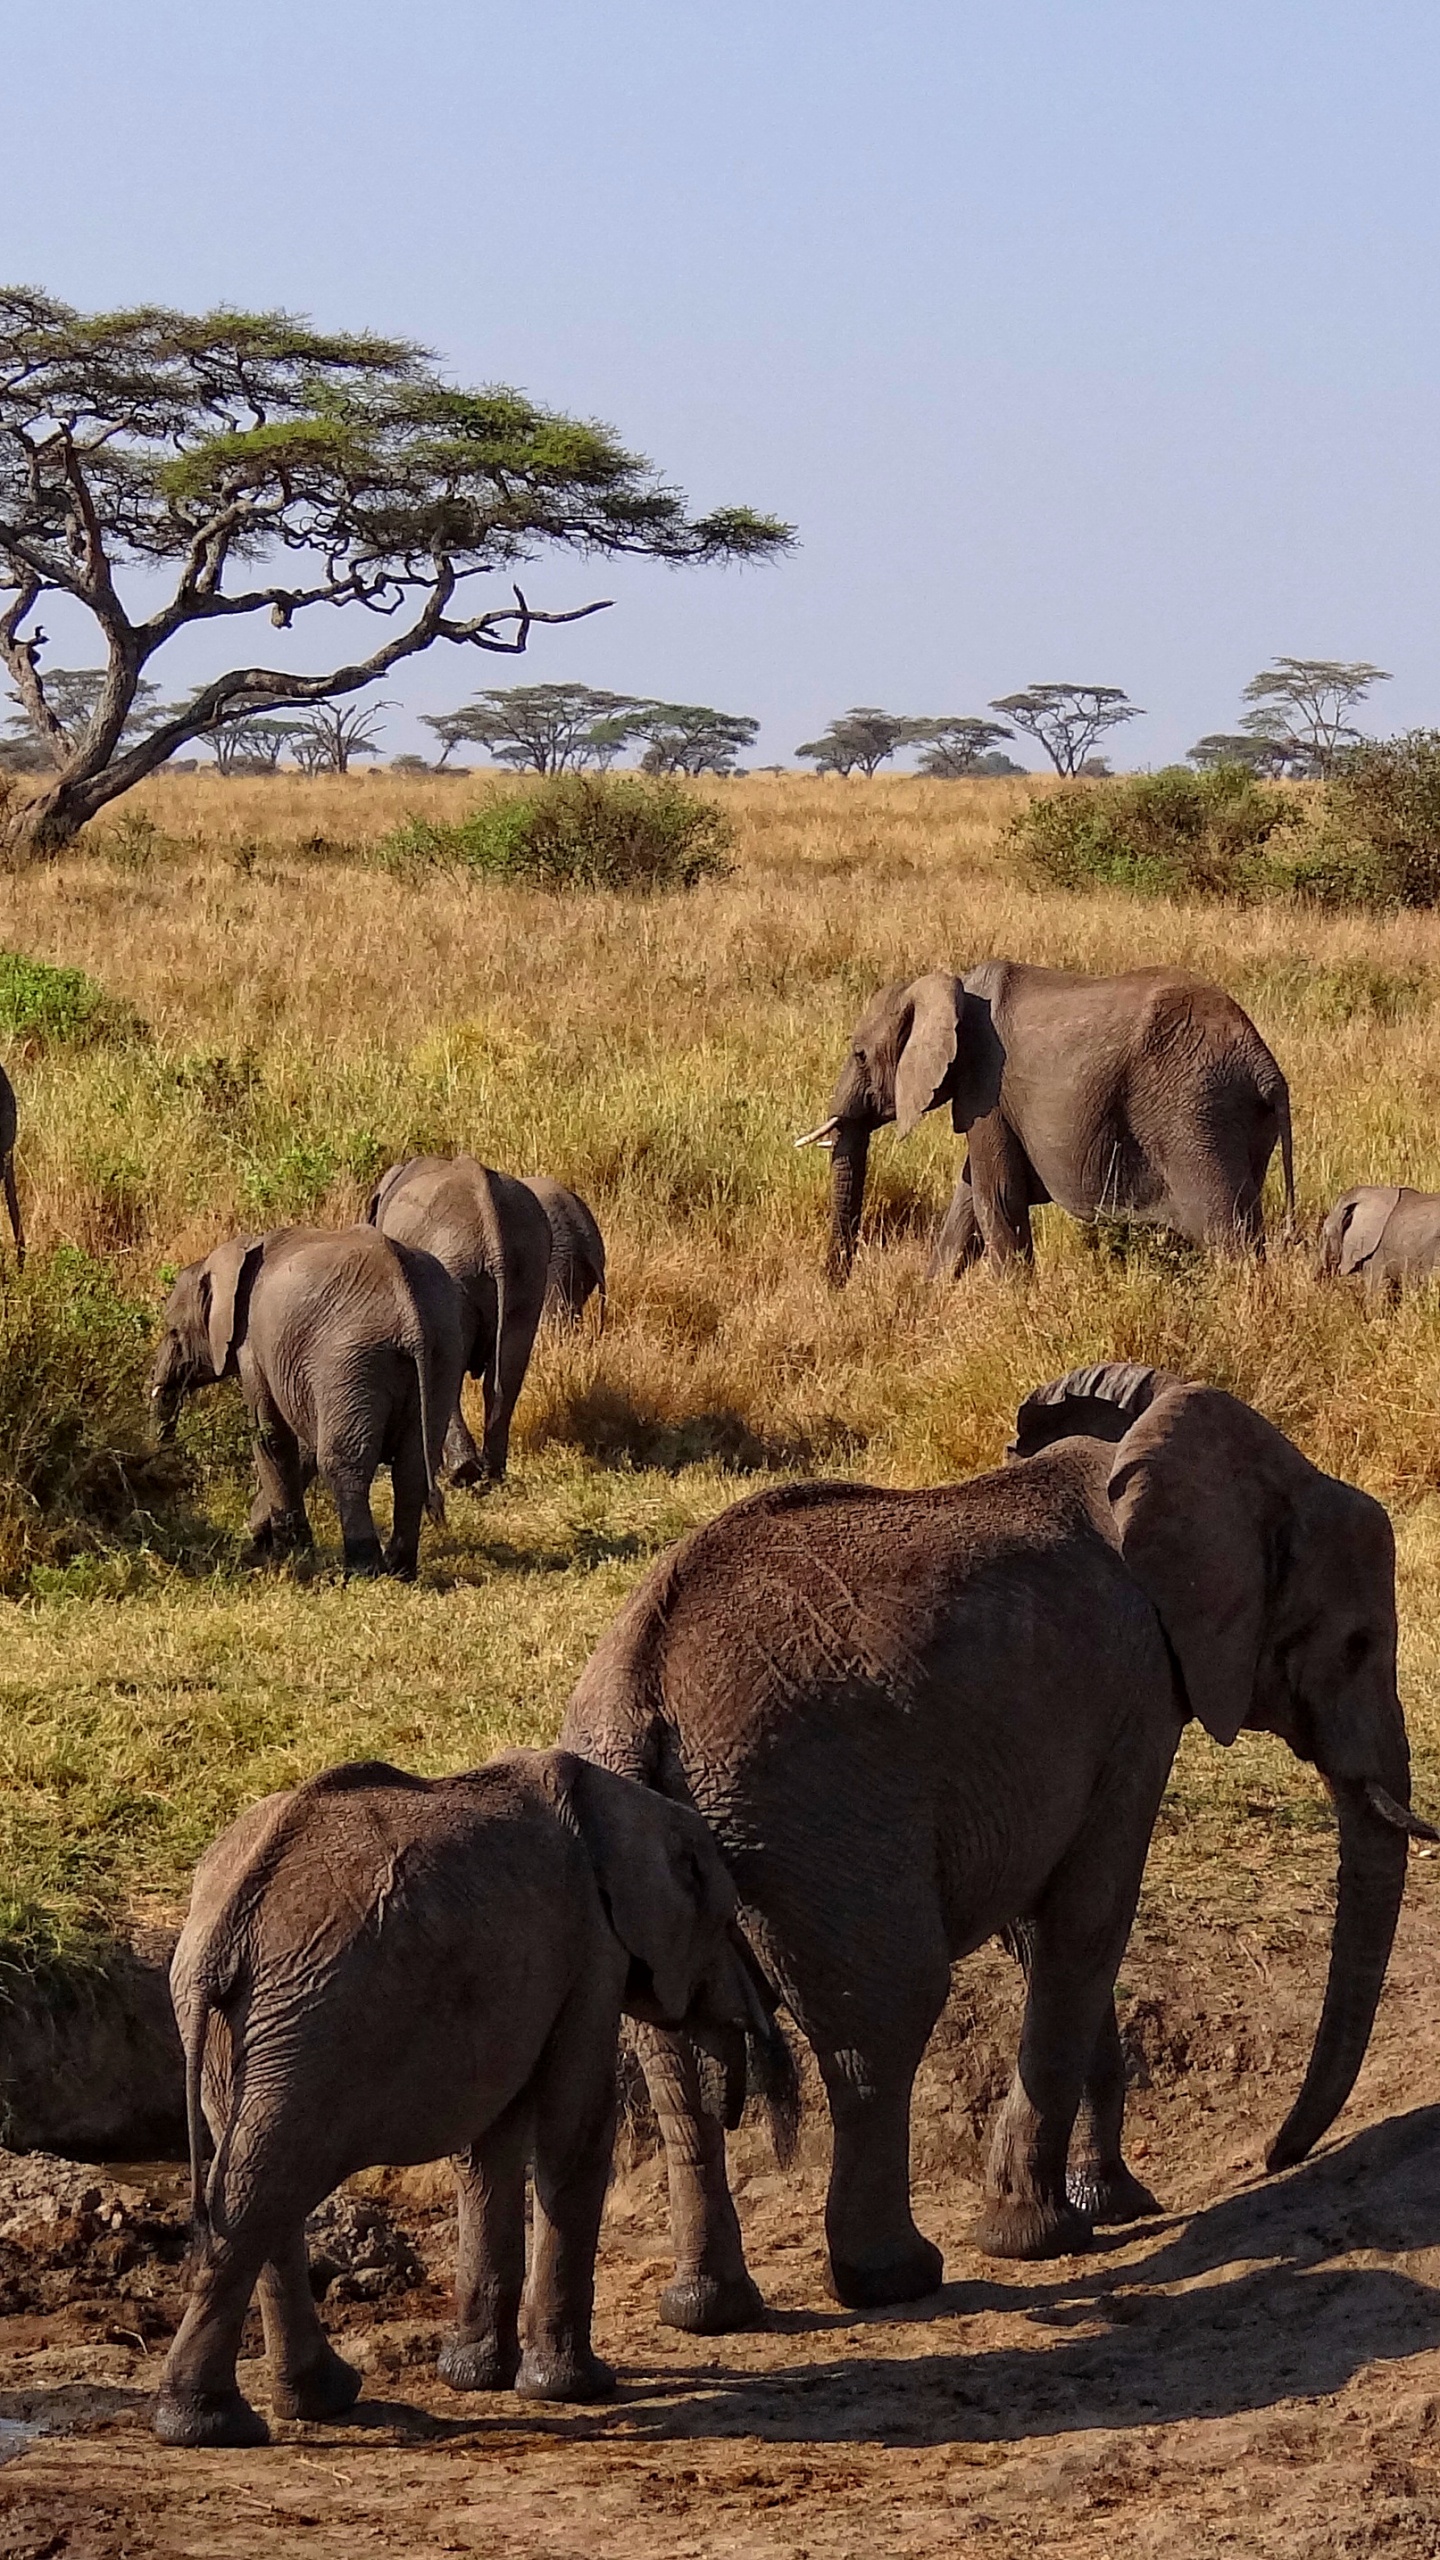 塞伦盖蒂国家公园, Safari, 公园, 野生动物, 陆地动物 壁纸 1440x2560 允许